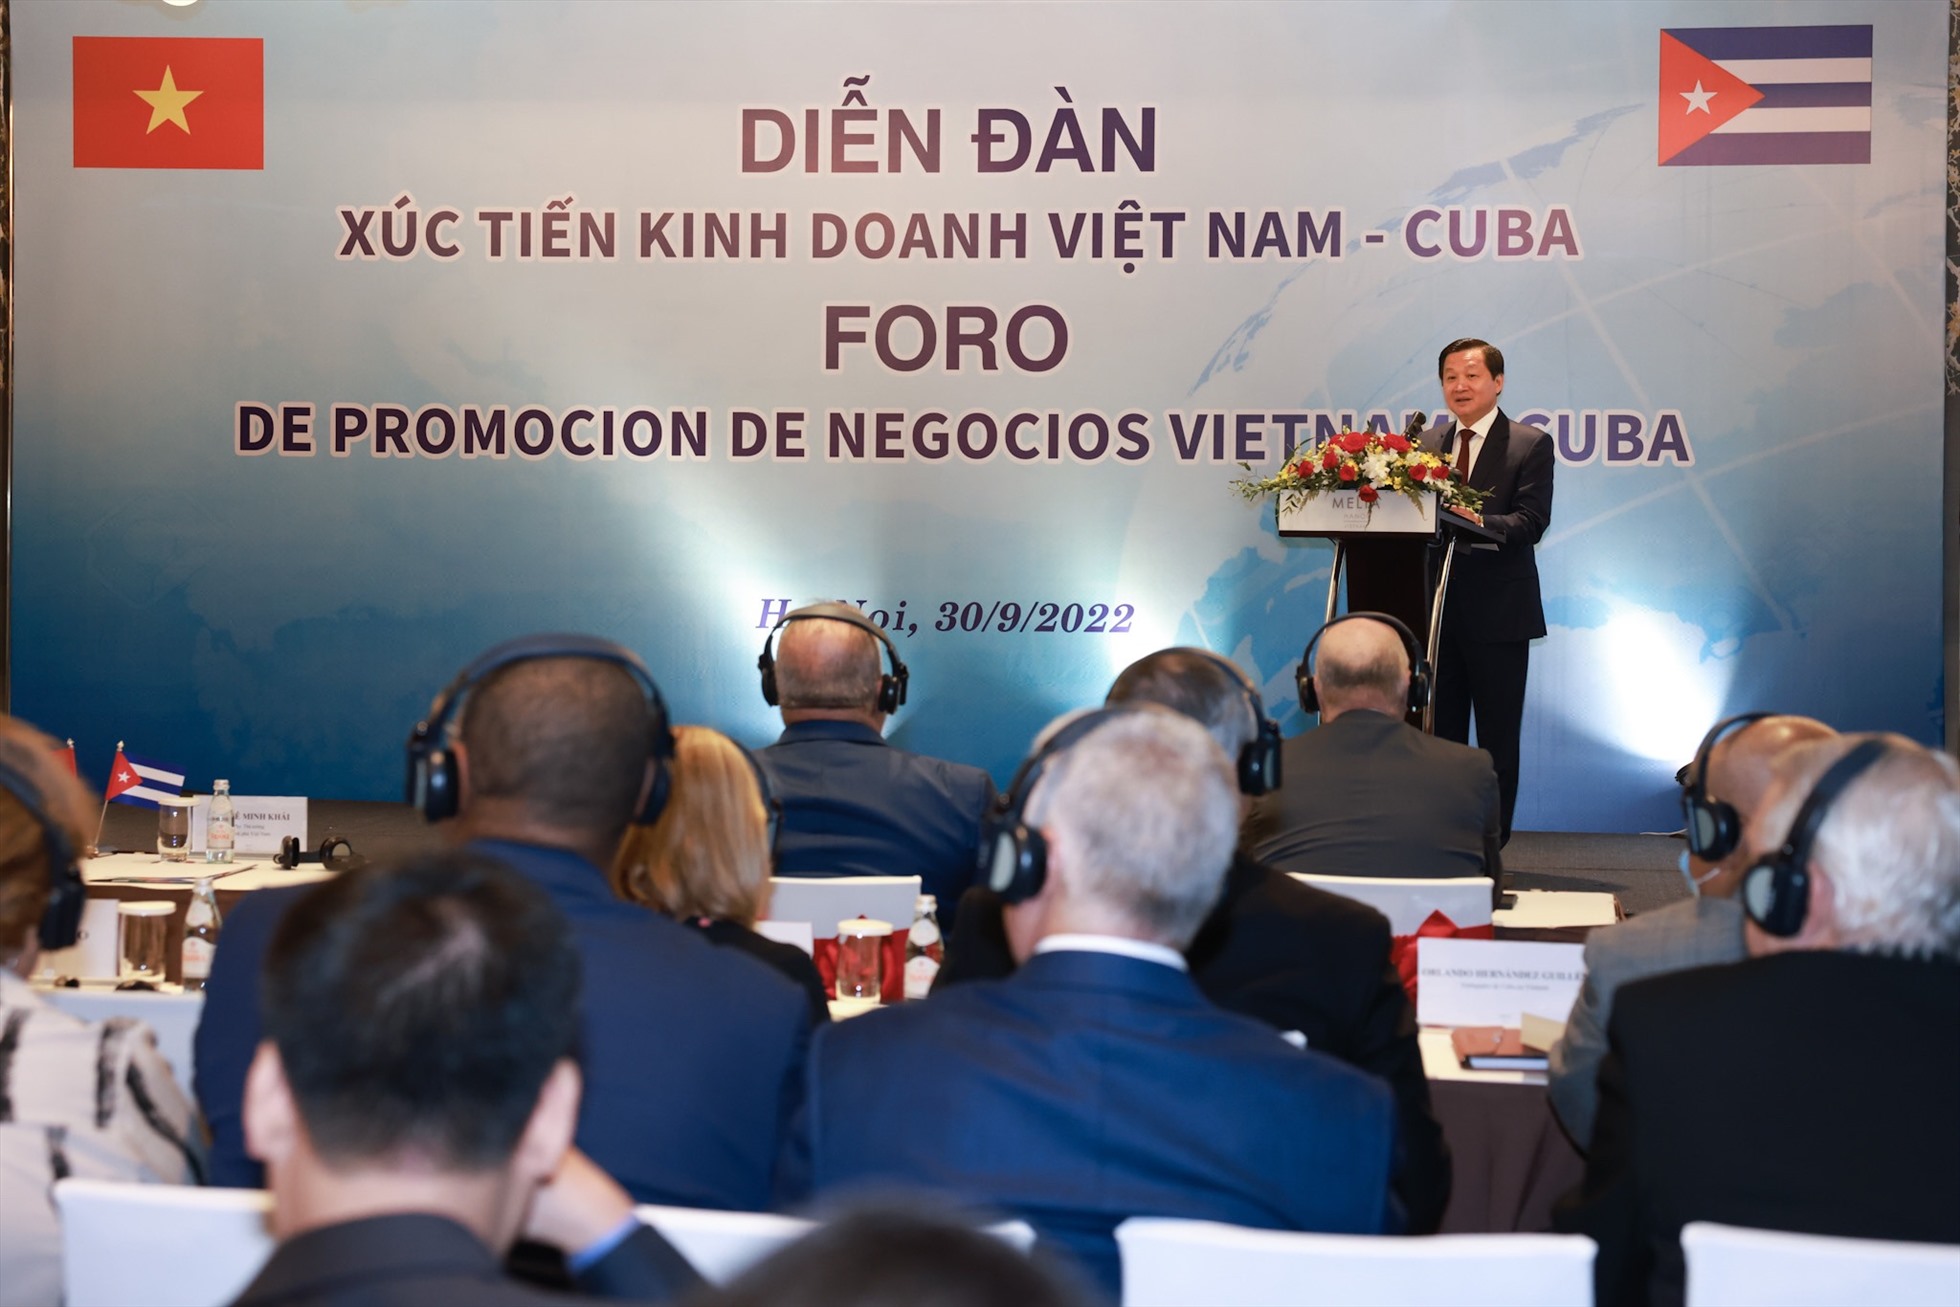 Việt Nam và Cuba nhất trí duy ổn định quan hệ thương mại song phương, tạo điều kiện để doanh nghiệp hai bên kinh doanh, đầu tư thuận lợi trong các lĩnh vực phát triển hạ tầng khu công nghiệp và hạ tầng du lịch, sản xuất vật liệu xây dựng, hàng tiêu dùng, năng lượng tái tạo, và mở rộng sang các lĩnh vực tiềm năng khác. Ảnh: Hải Nguyễn